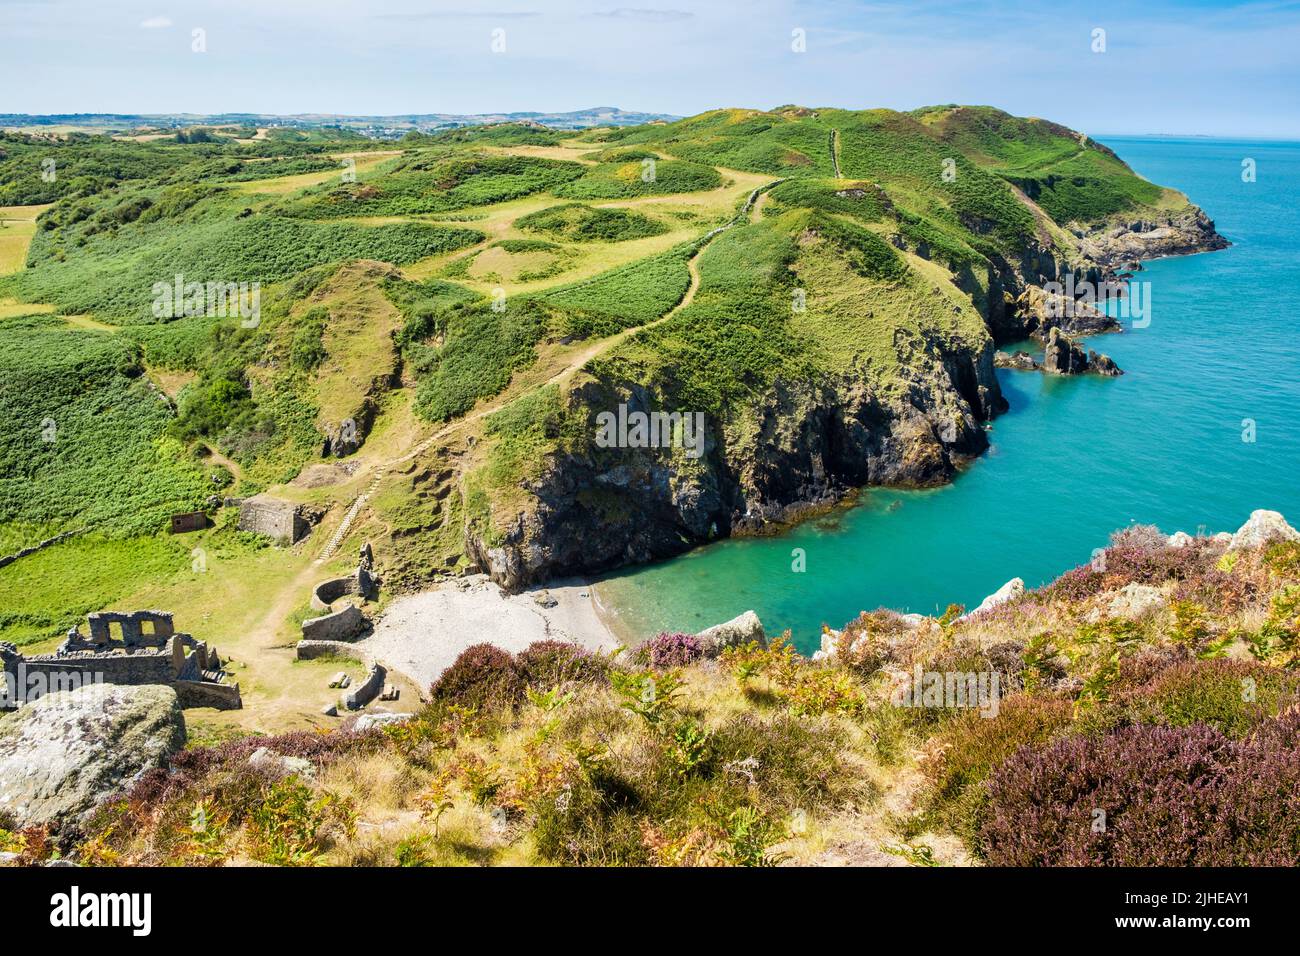 Blick auf veraltete alte Porzellanarbeiten und felsige Küste vom Anglesey Coastal Path oberhalb von Porth Llanlleiana Bay Cemaes Isle of Anglesey North Wales Großbritannien Stockfoto